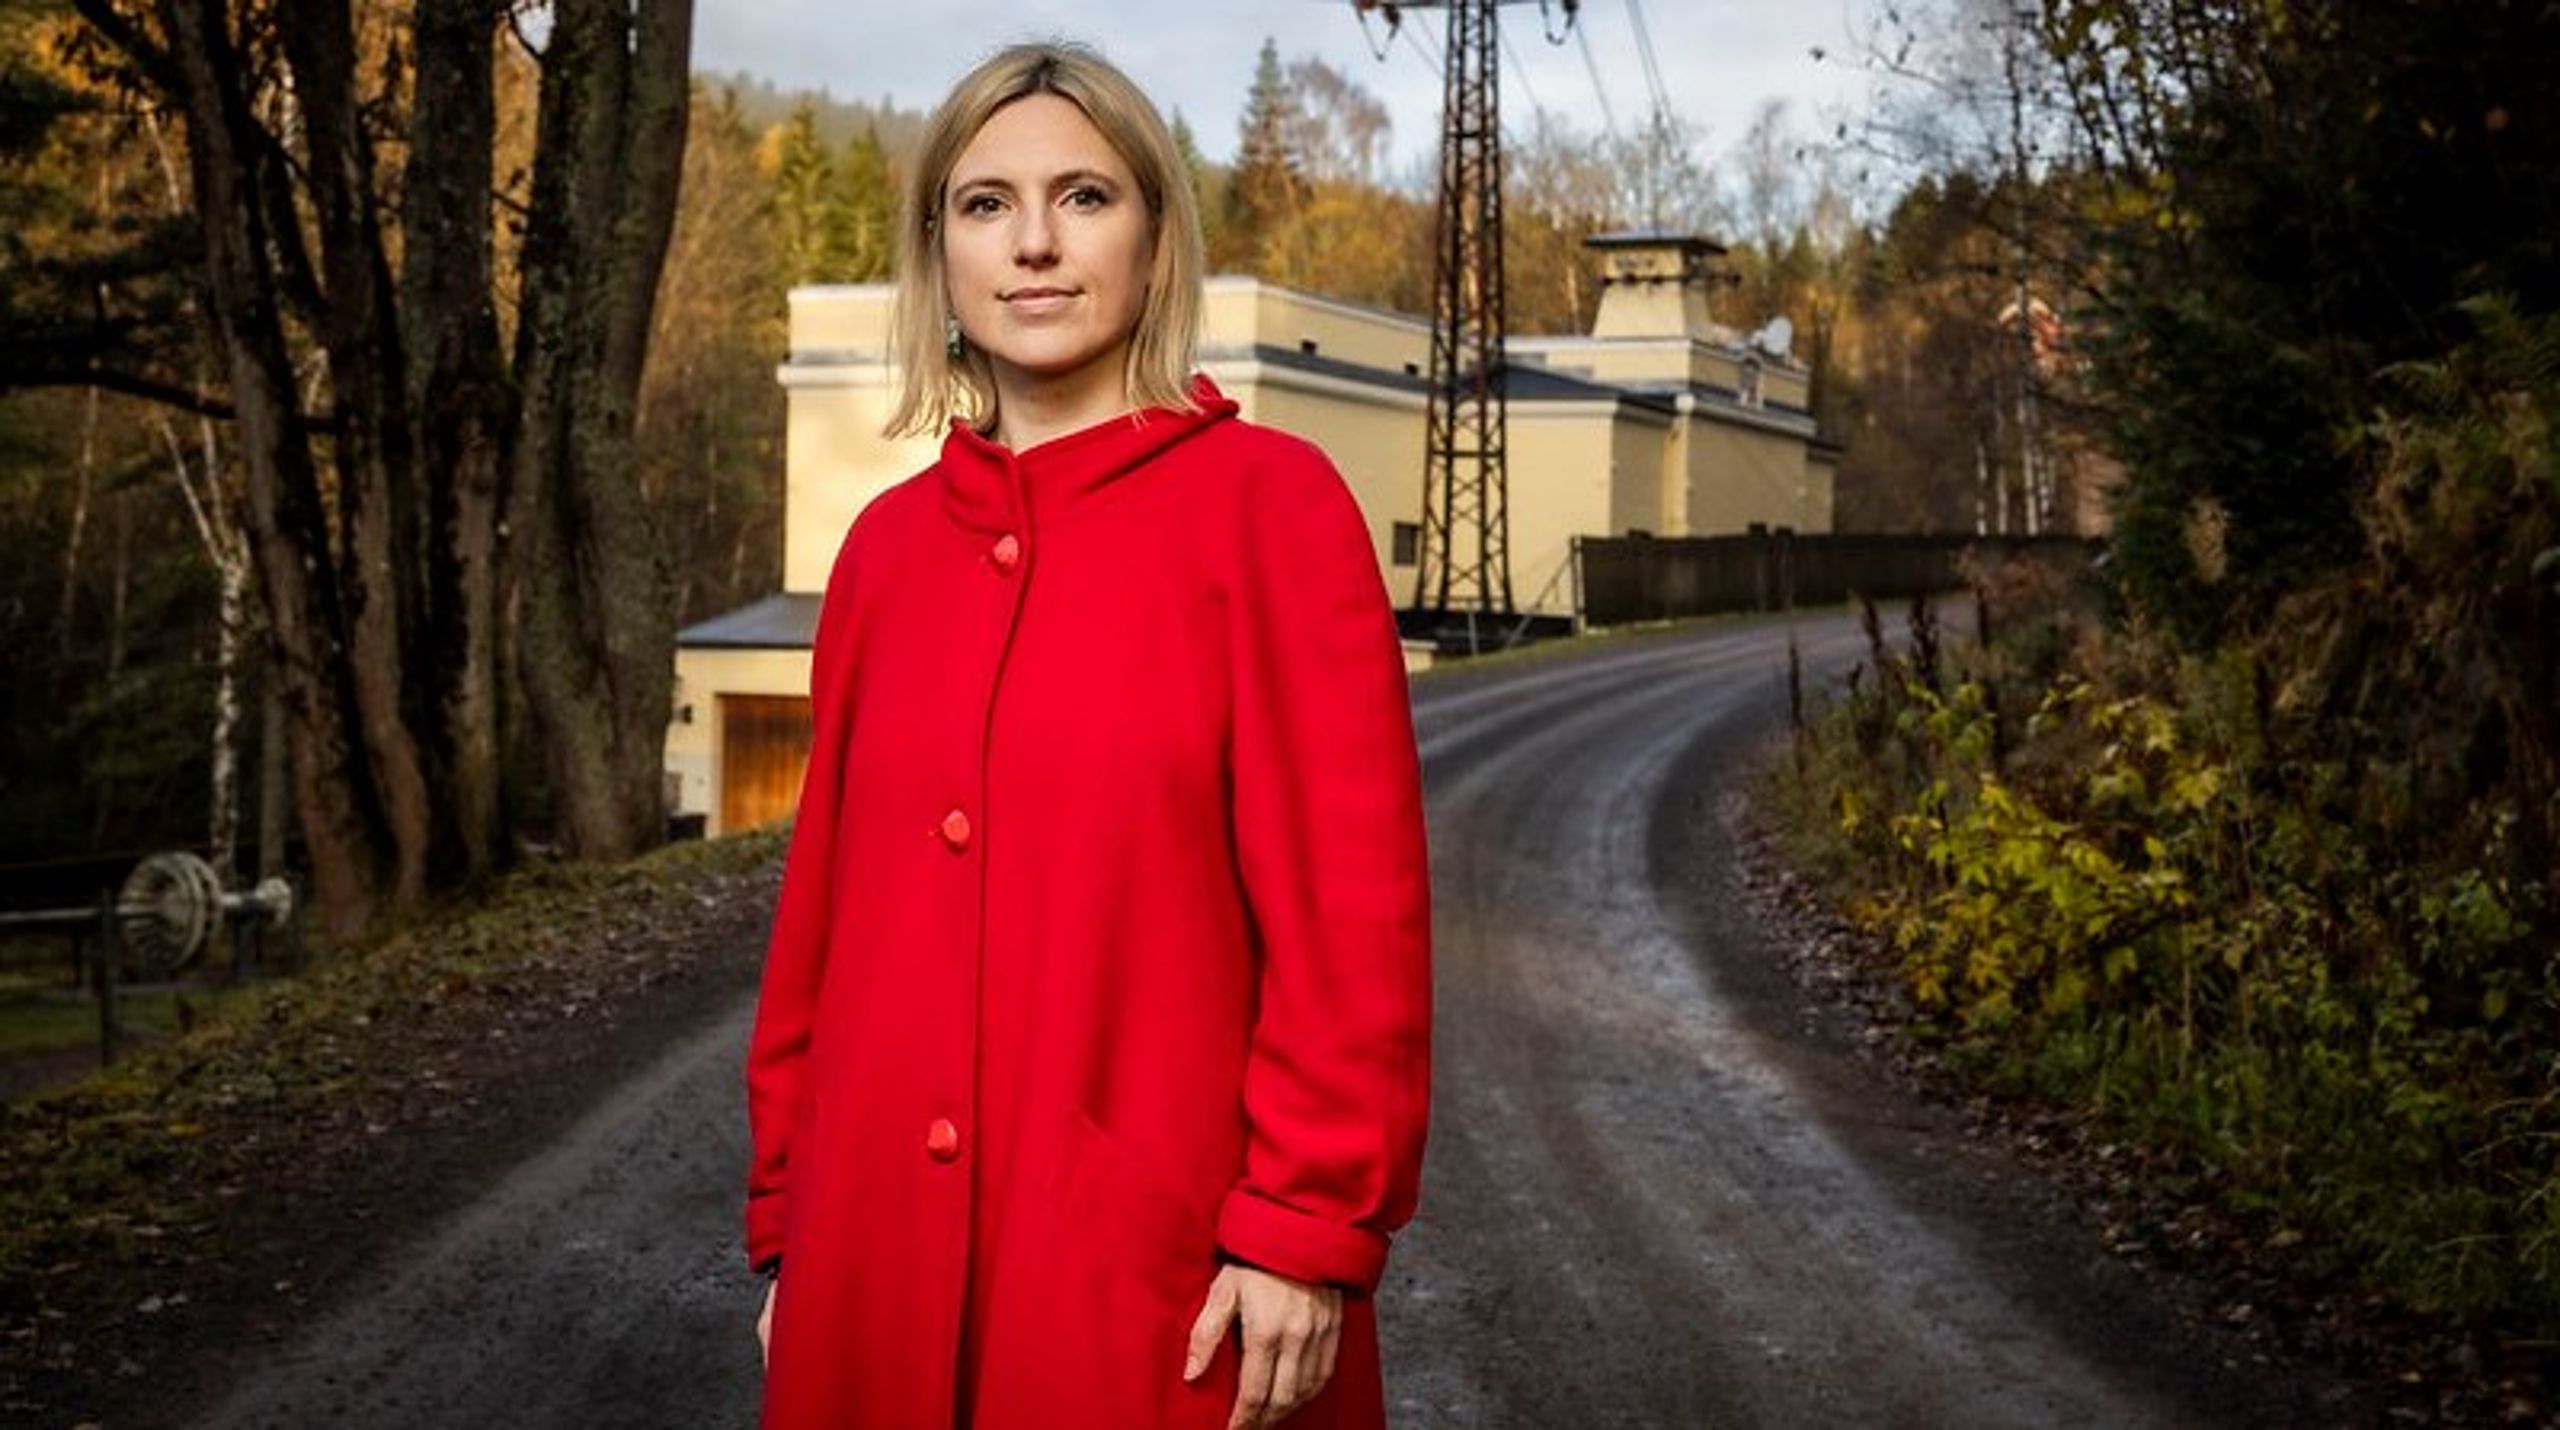 Rødts stortingsrepresentant i energi- og miljøkomiteen, Sofie Marhaug, er kritisk til at regjeringen lanserer et kraft- og industriløft for Finnmark uten egne tiltak for økt energieffektivisering.